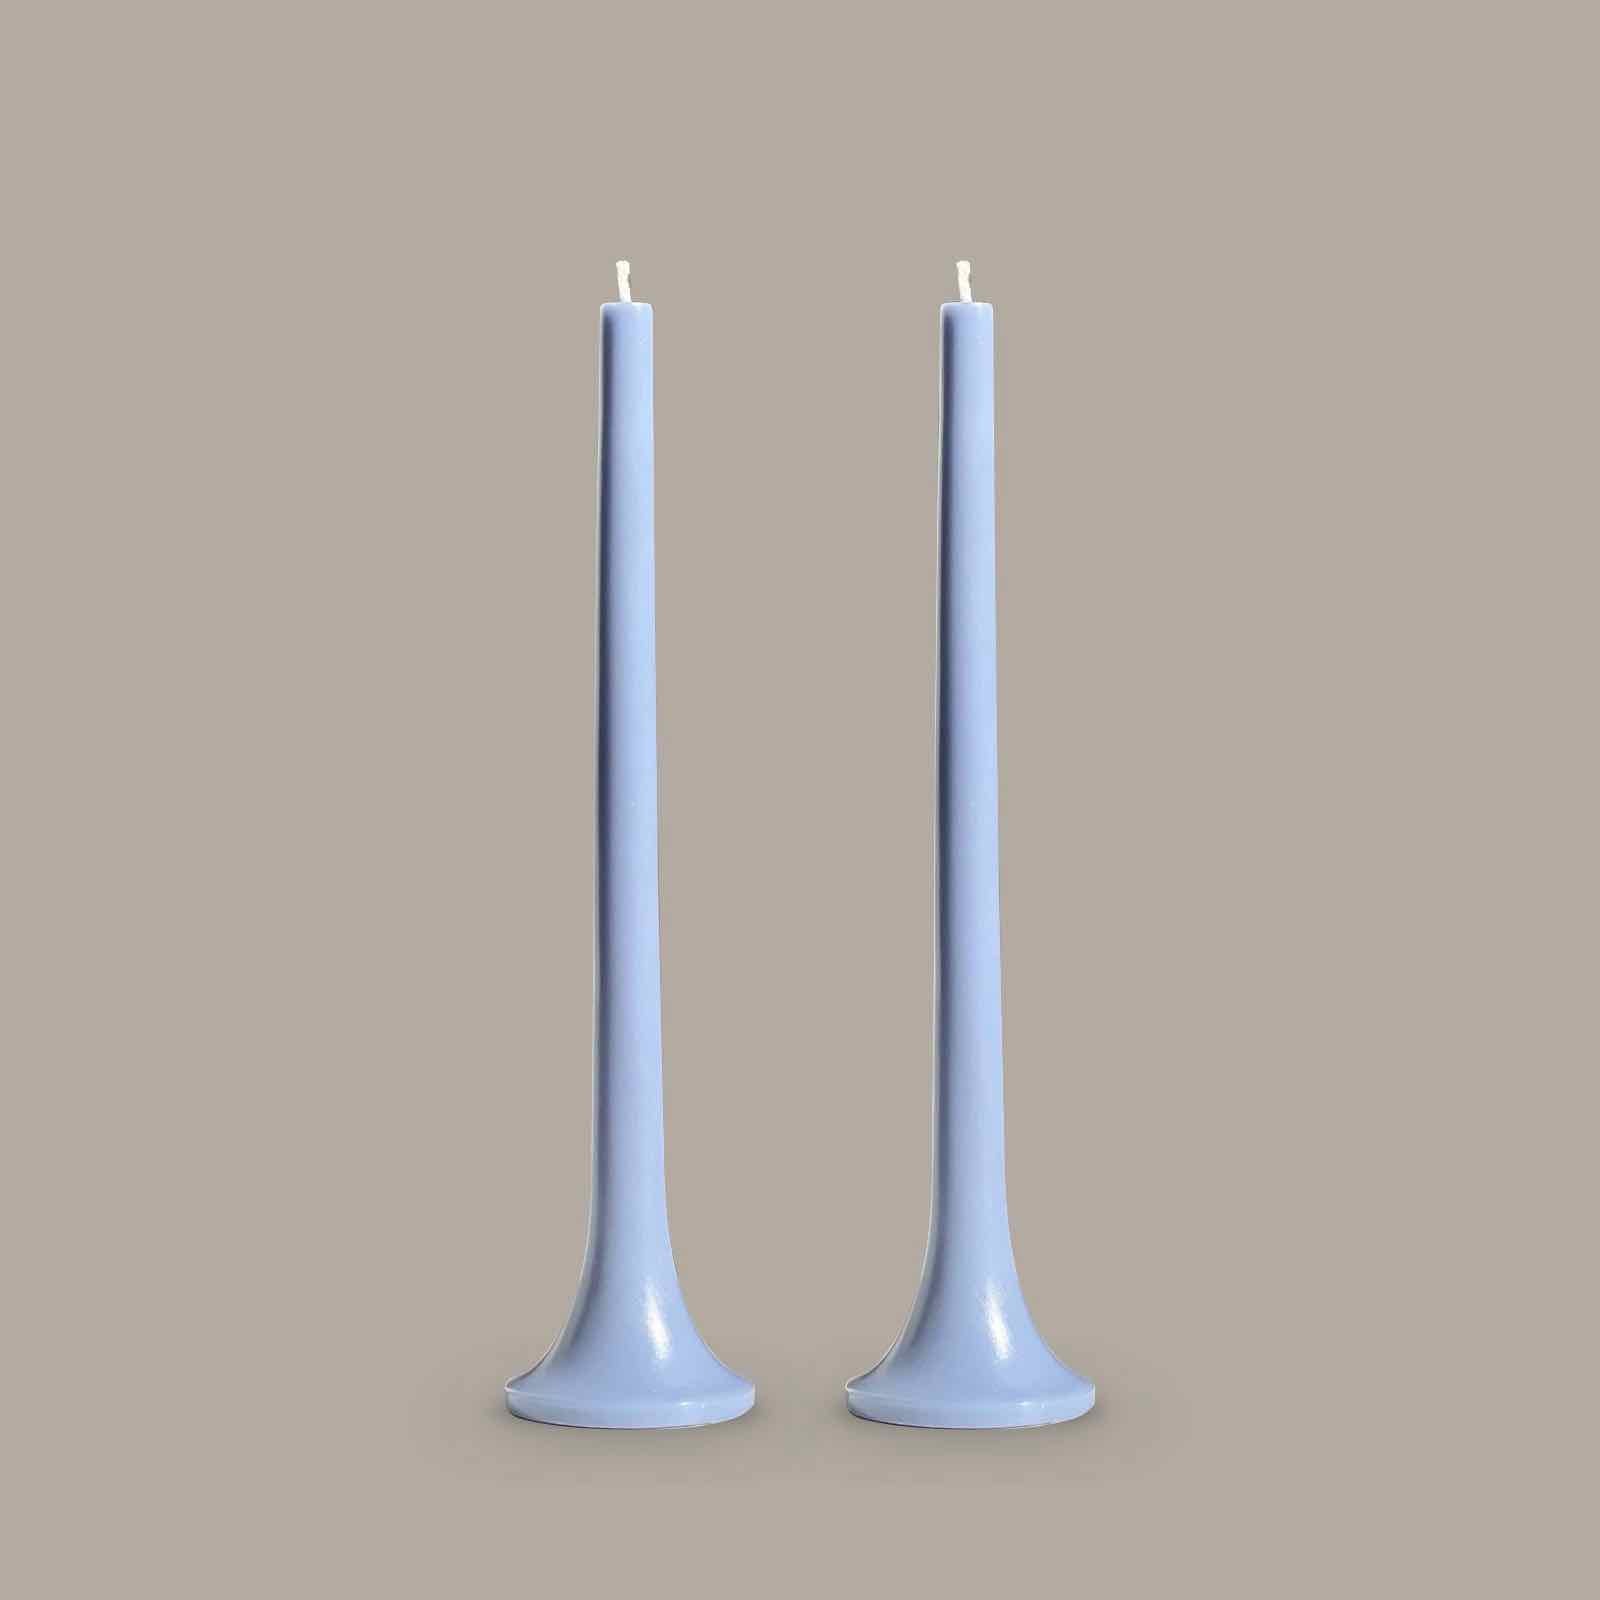 True blue taper candles